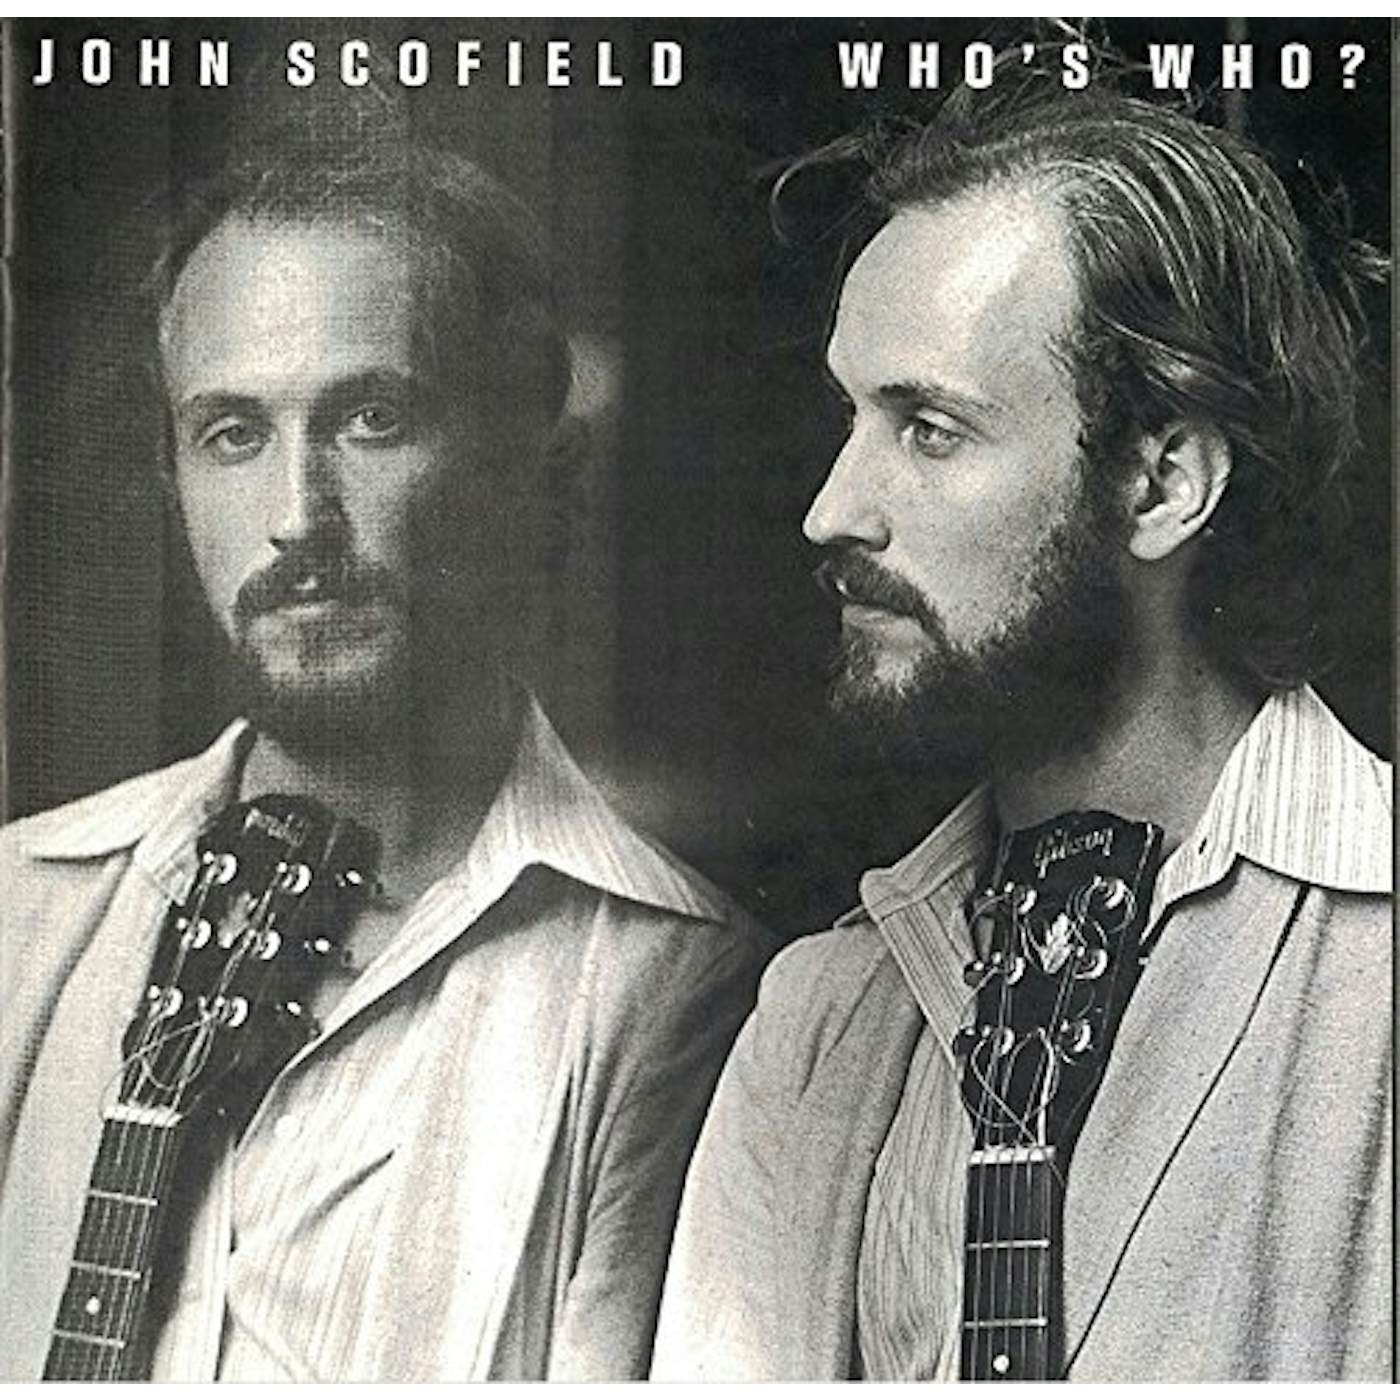 John Scofield WHO'S WHO? CD